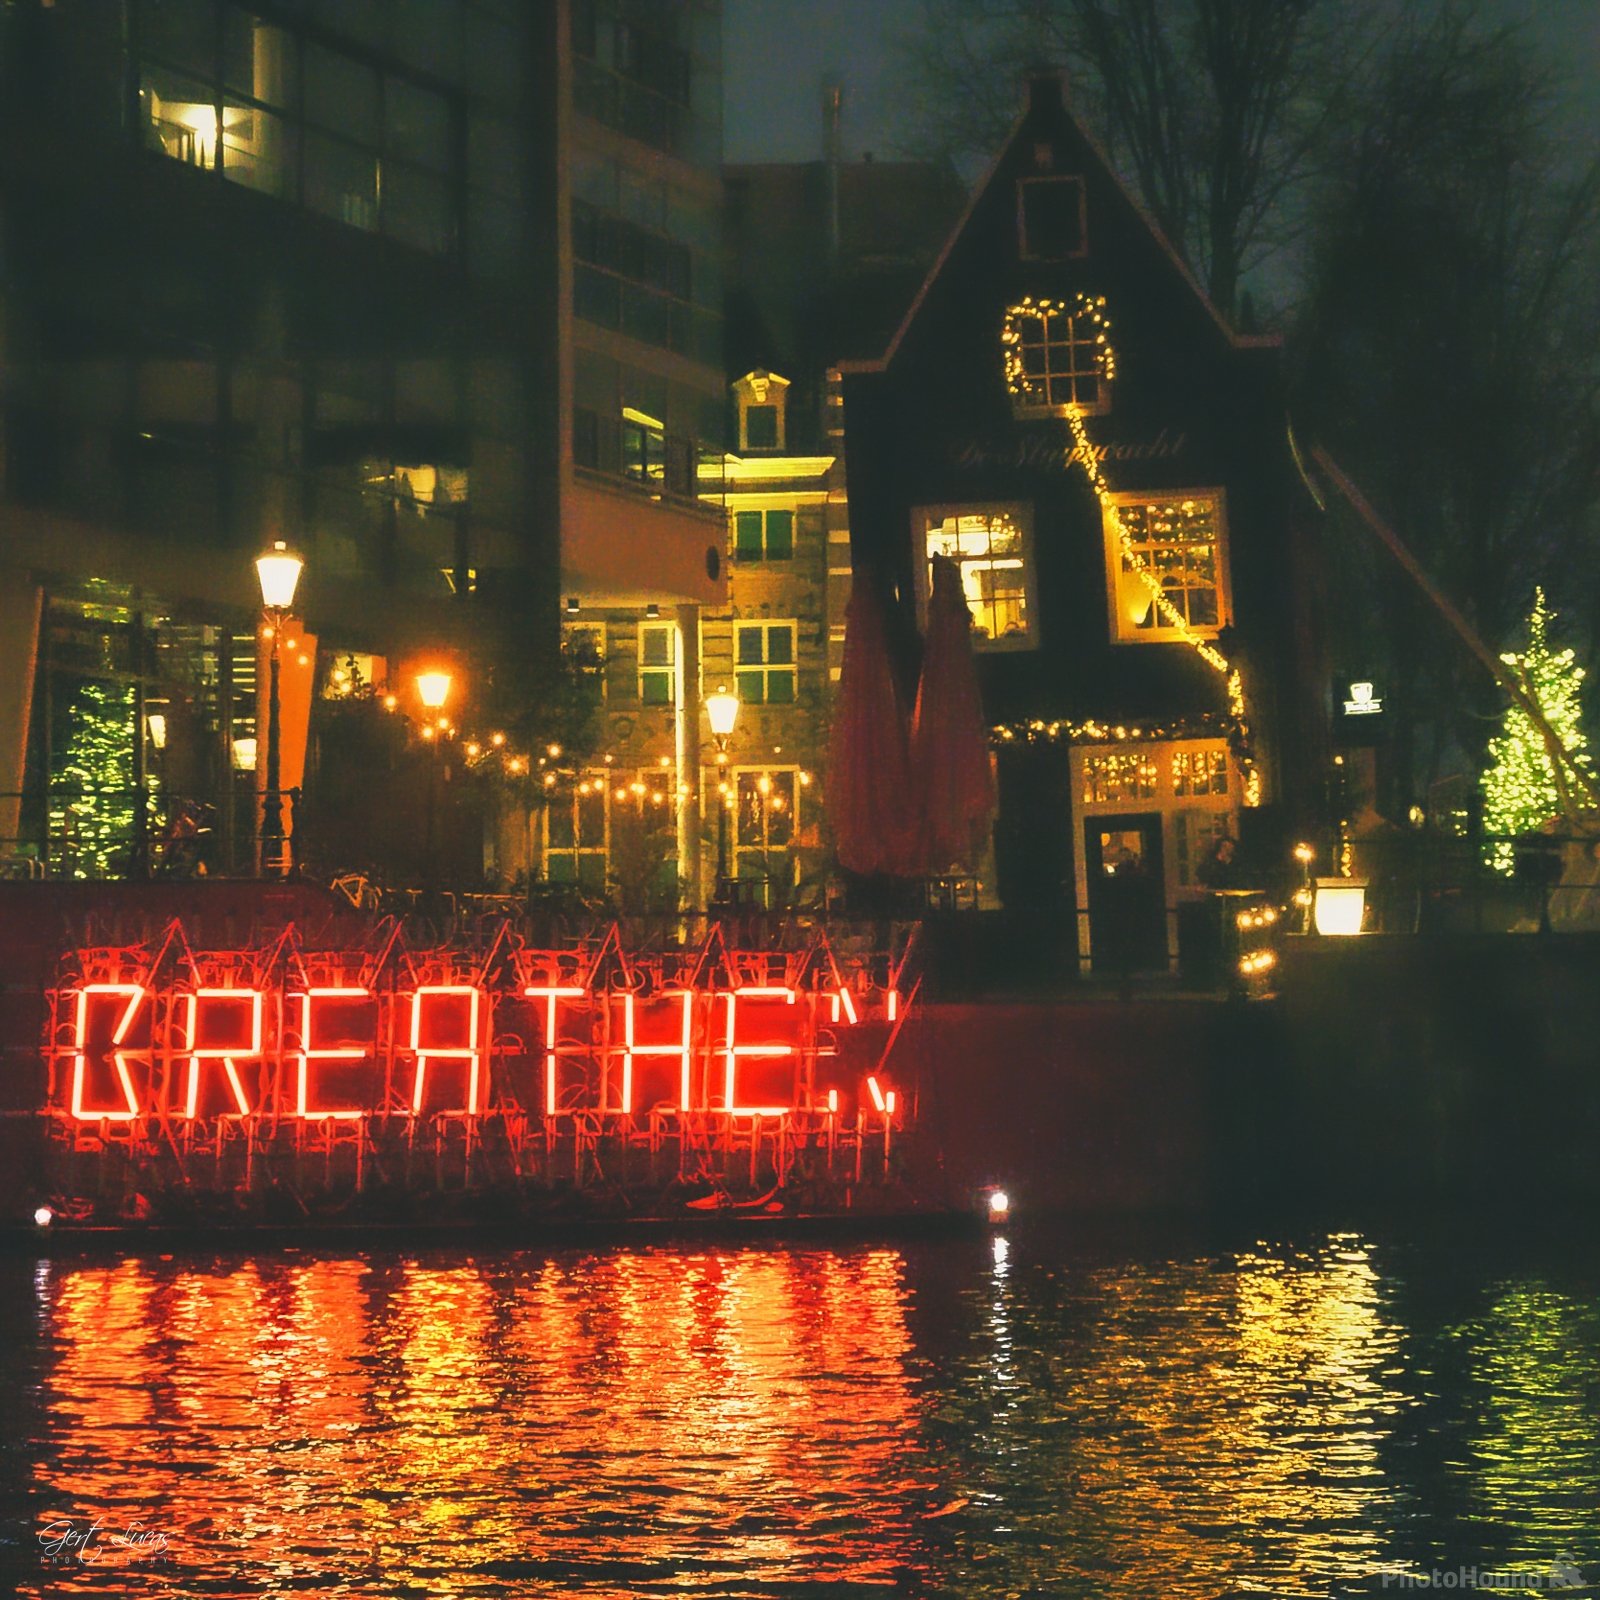 Image of Amsterdam Light Festival by Gert Lucas